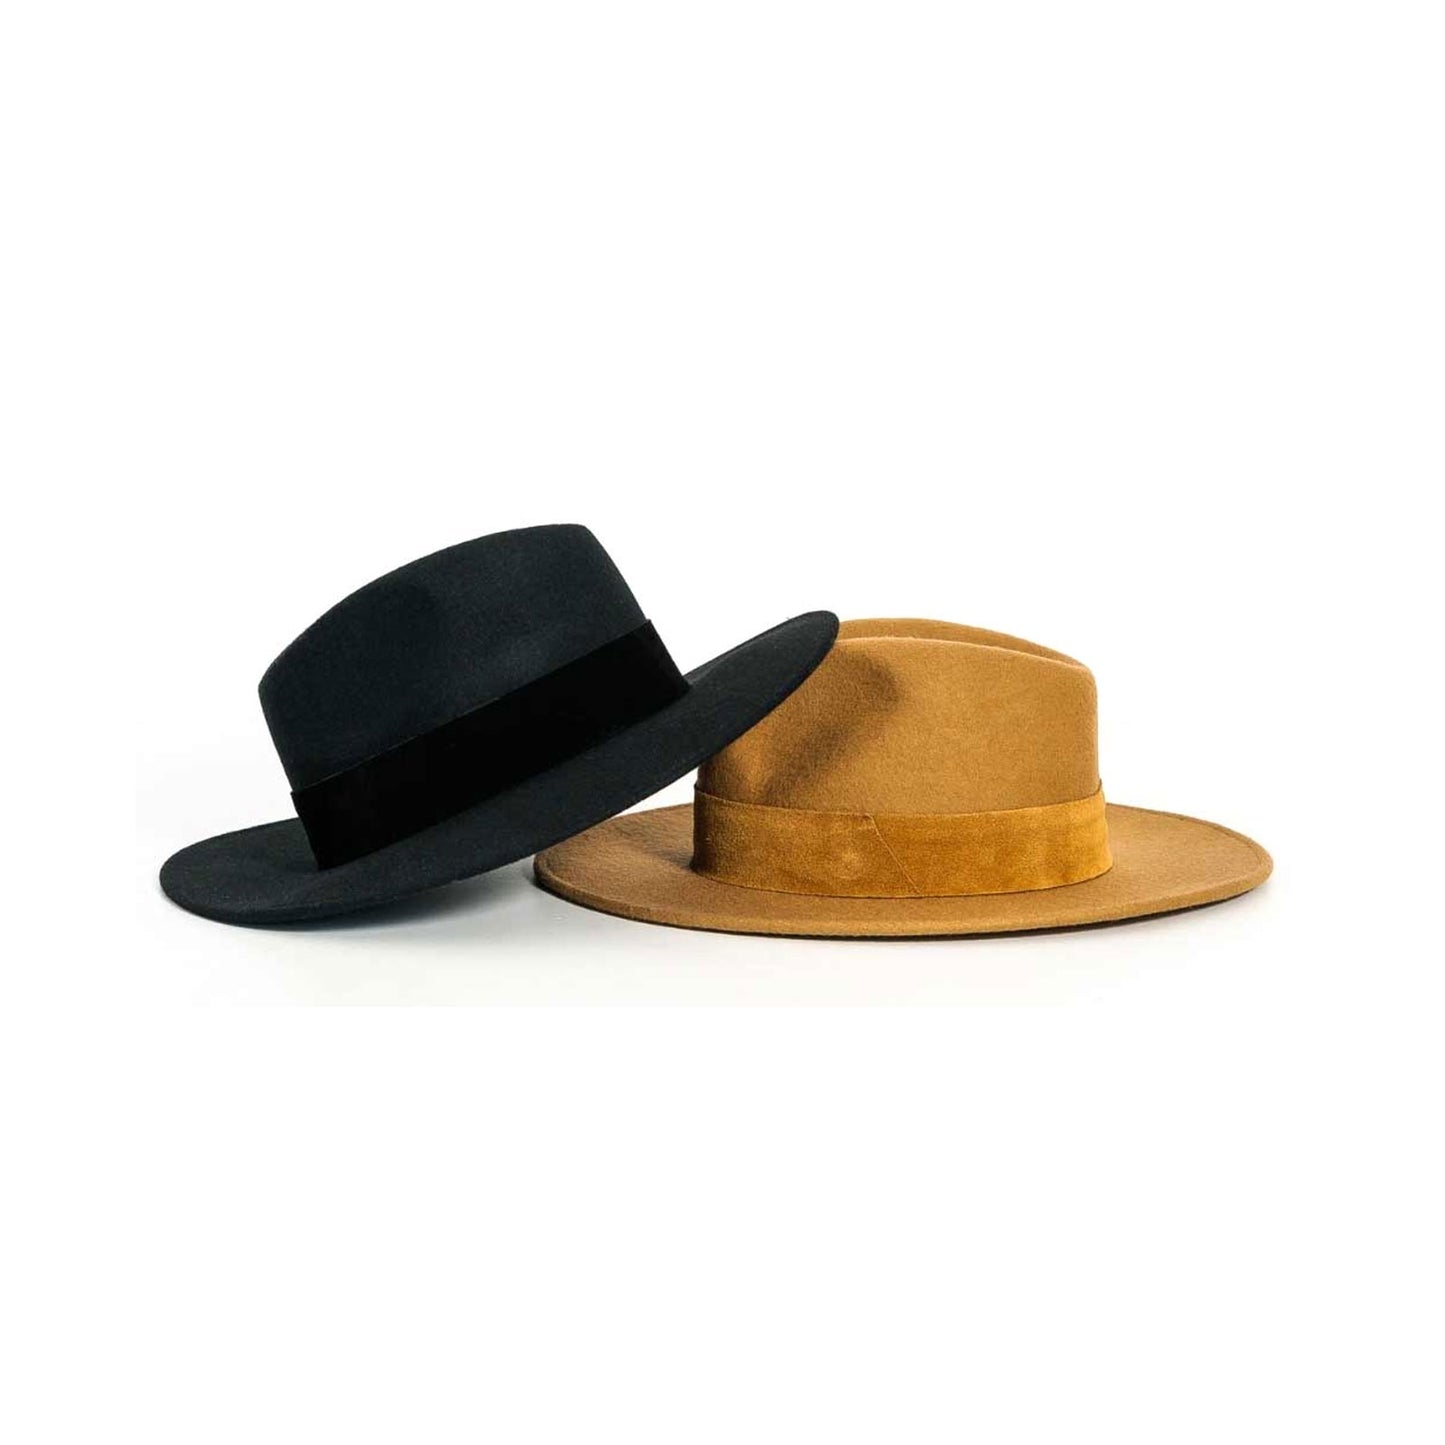 Wide Brimmed Felt Fedora Hat, Black